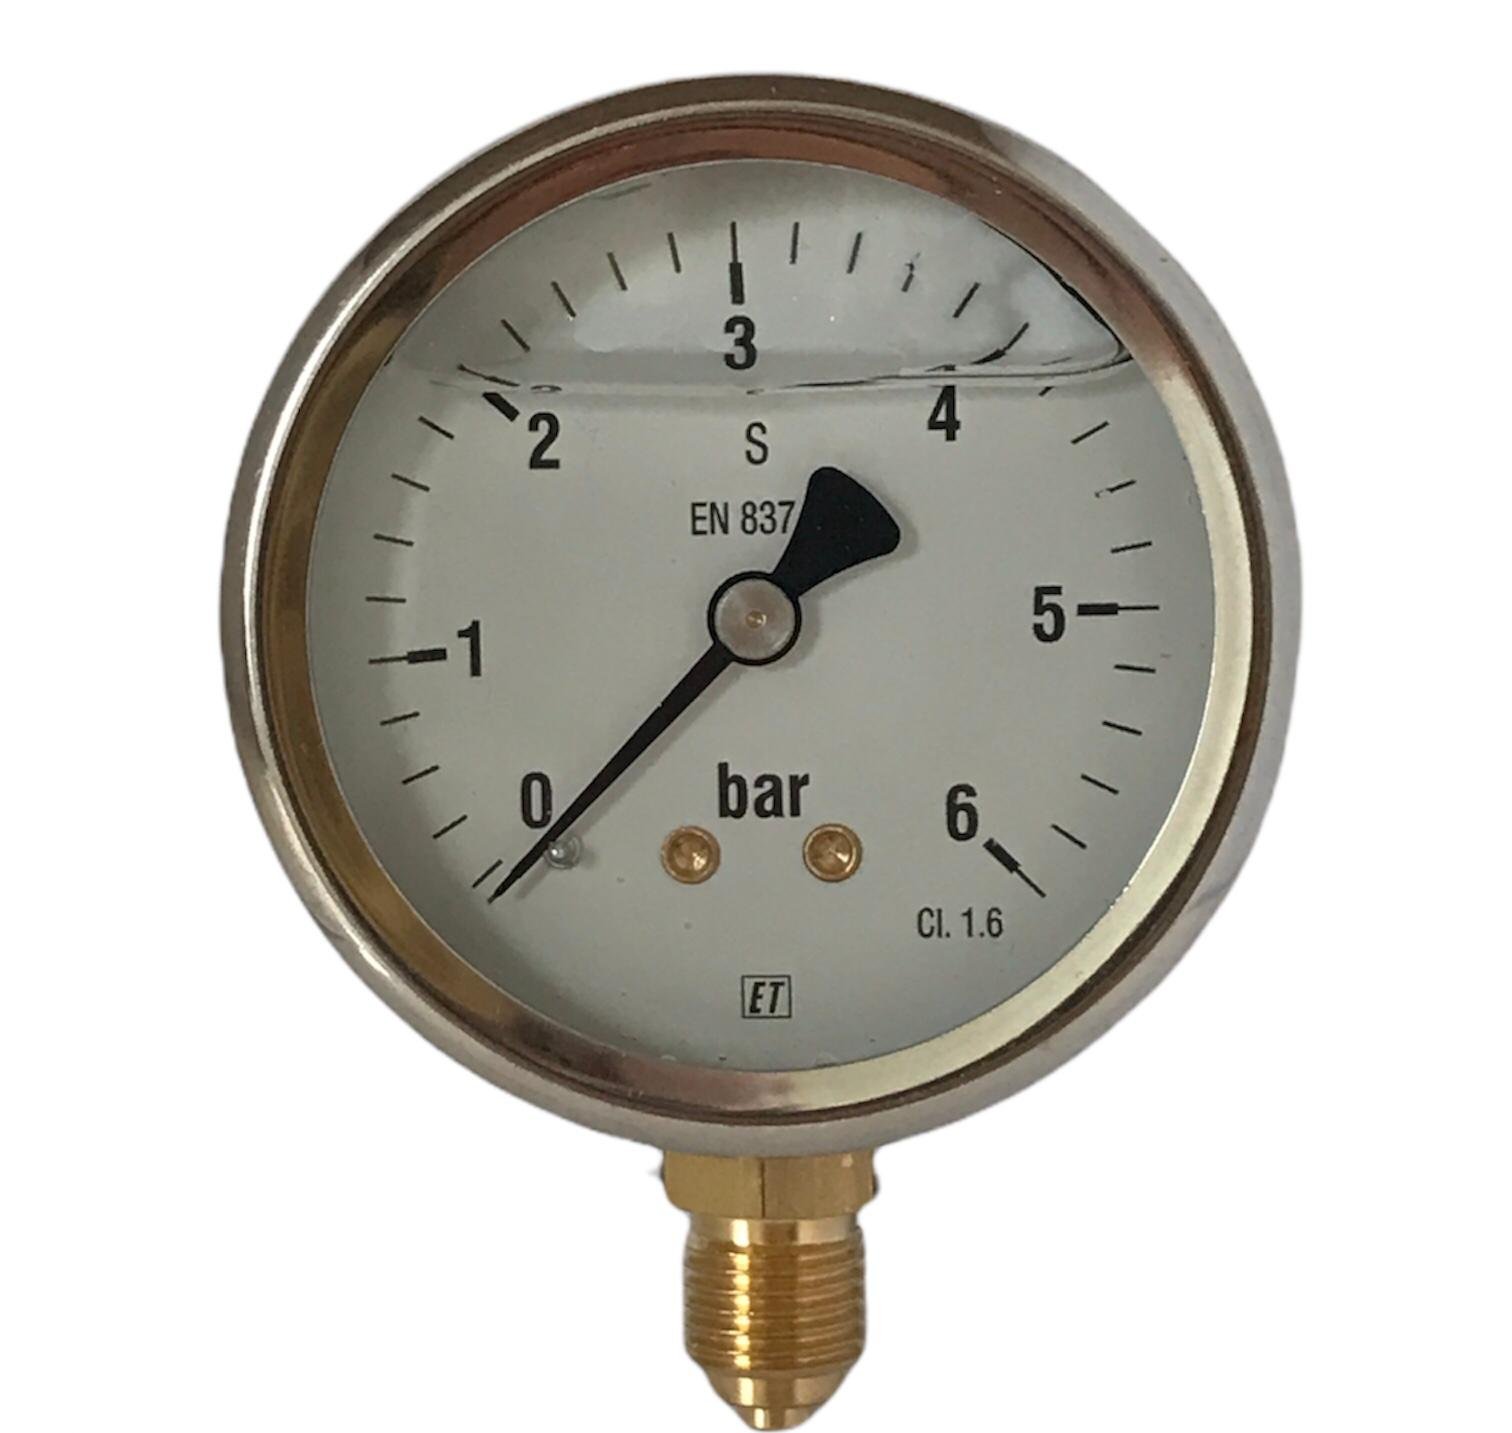 Buisveermanometer met onderaansluiting (glycerinevulling) 0 - 4 bar
38.4054

Webshop » Beregening » Pompen toebehoren